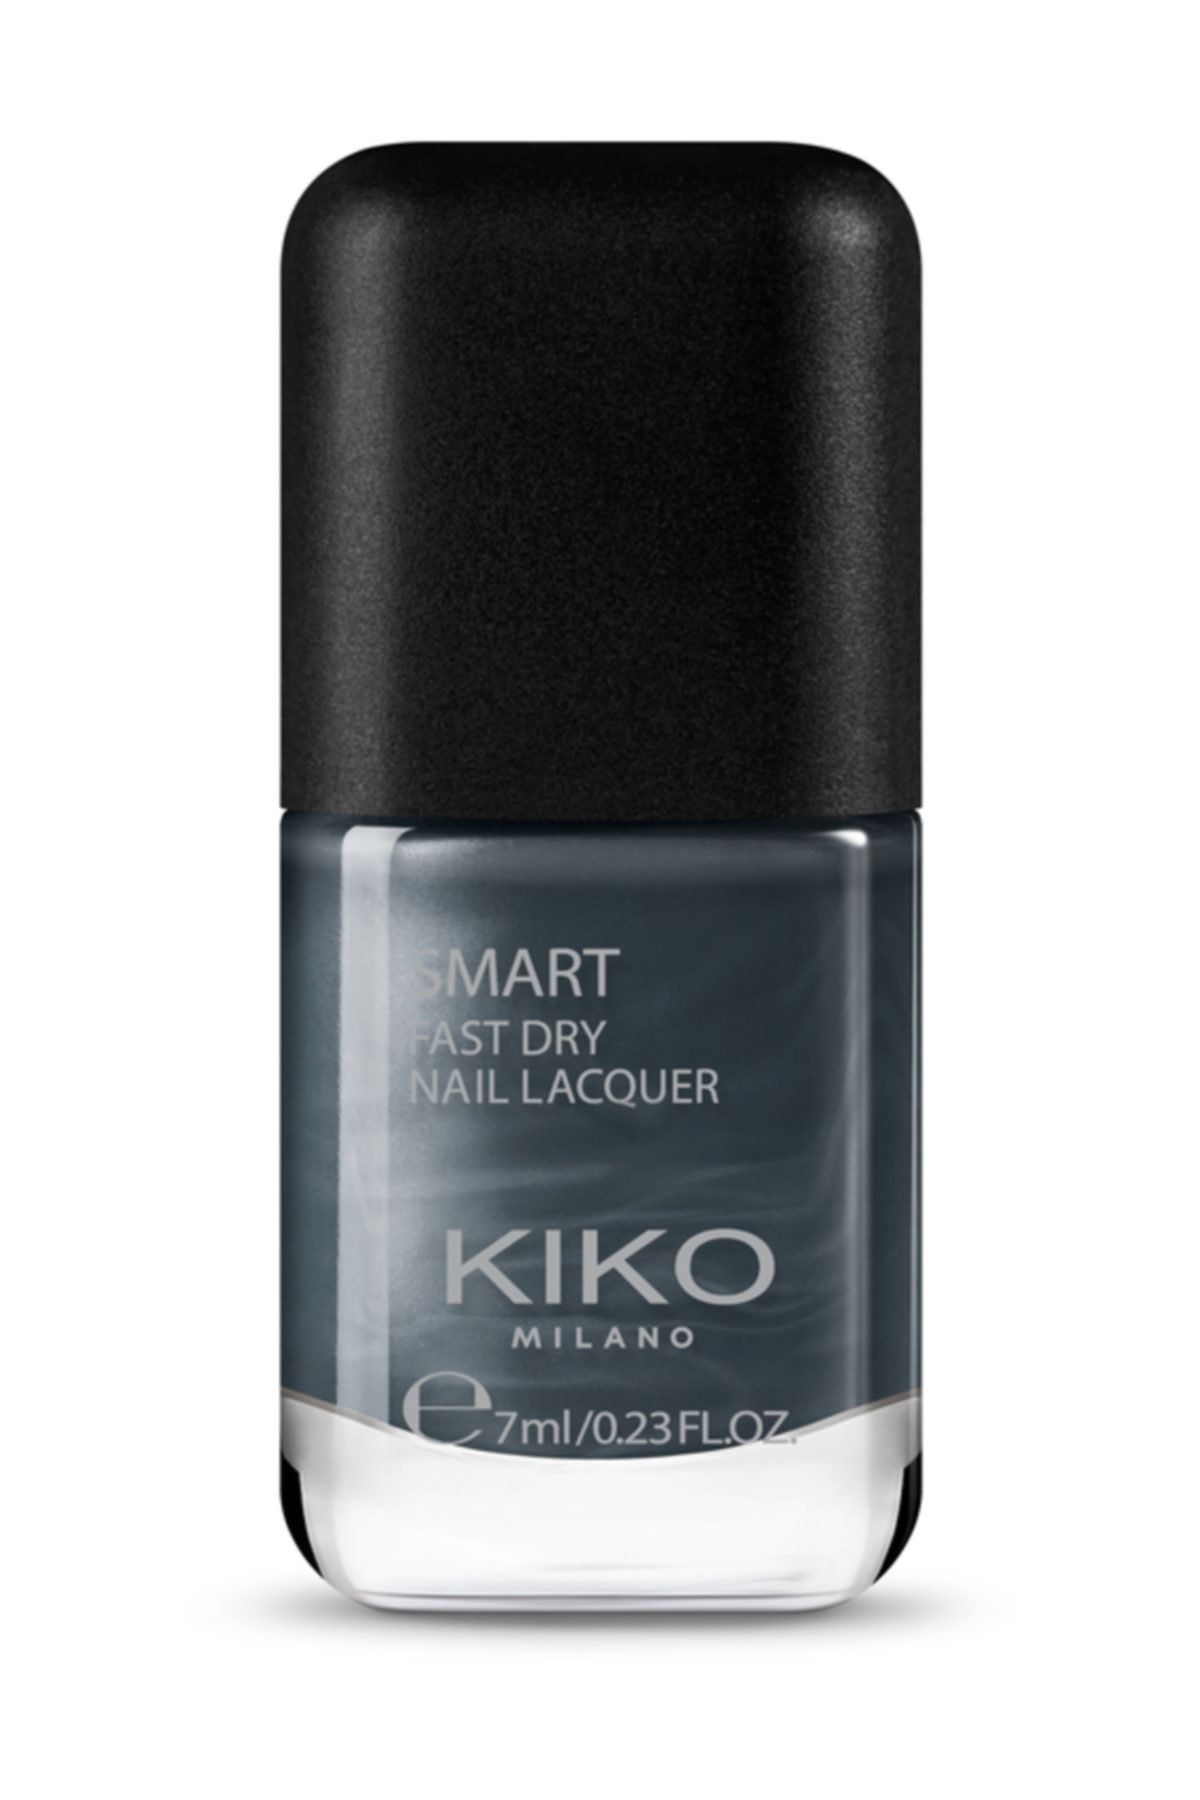 KIKO Smart Fast Dry Nail Lacquer 96 Oje